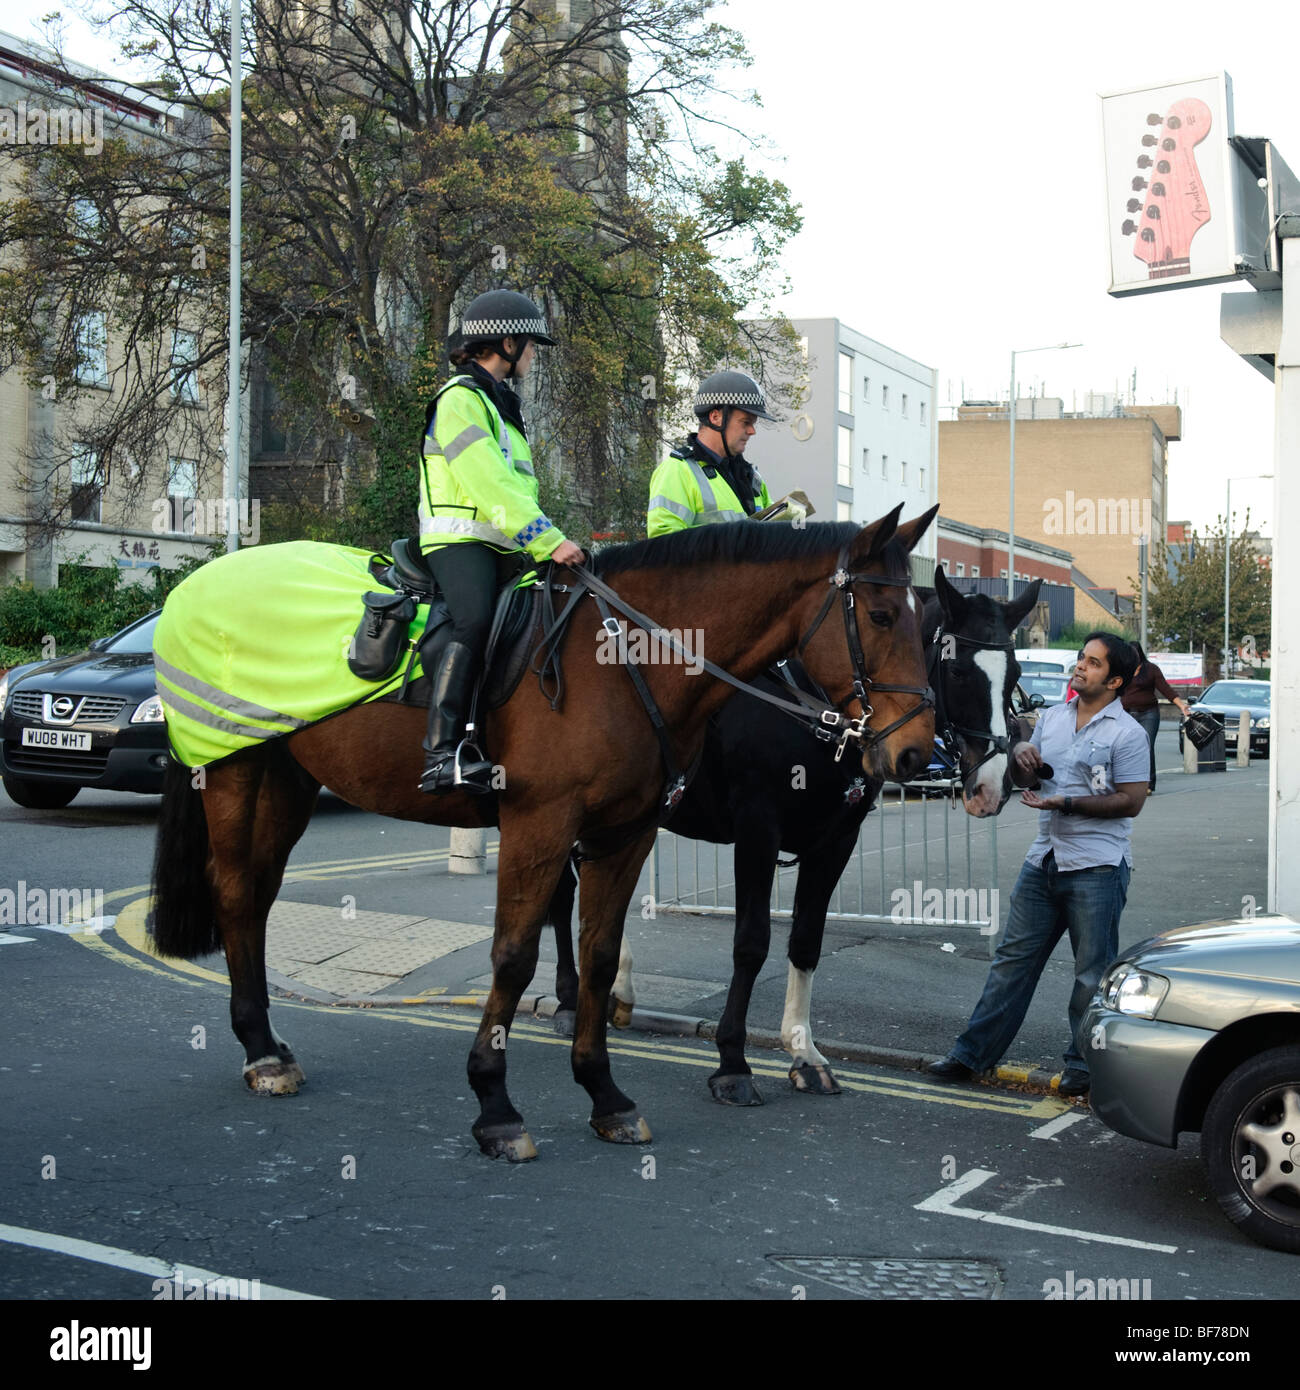 Deux officiers de la police montée à cheval flics parler à un membre du public dans le centre-ville de Swansea, Pays de Galles, Royaume-Uni Banque D'Images